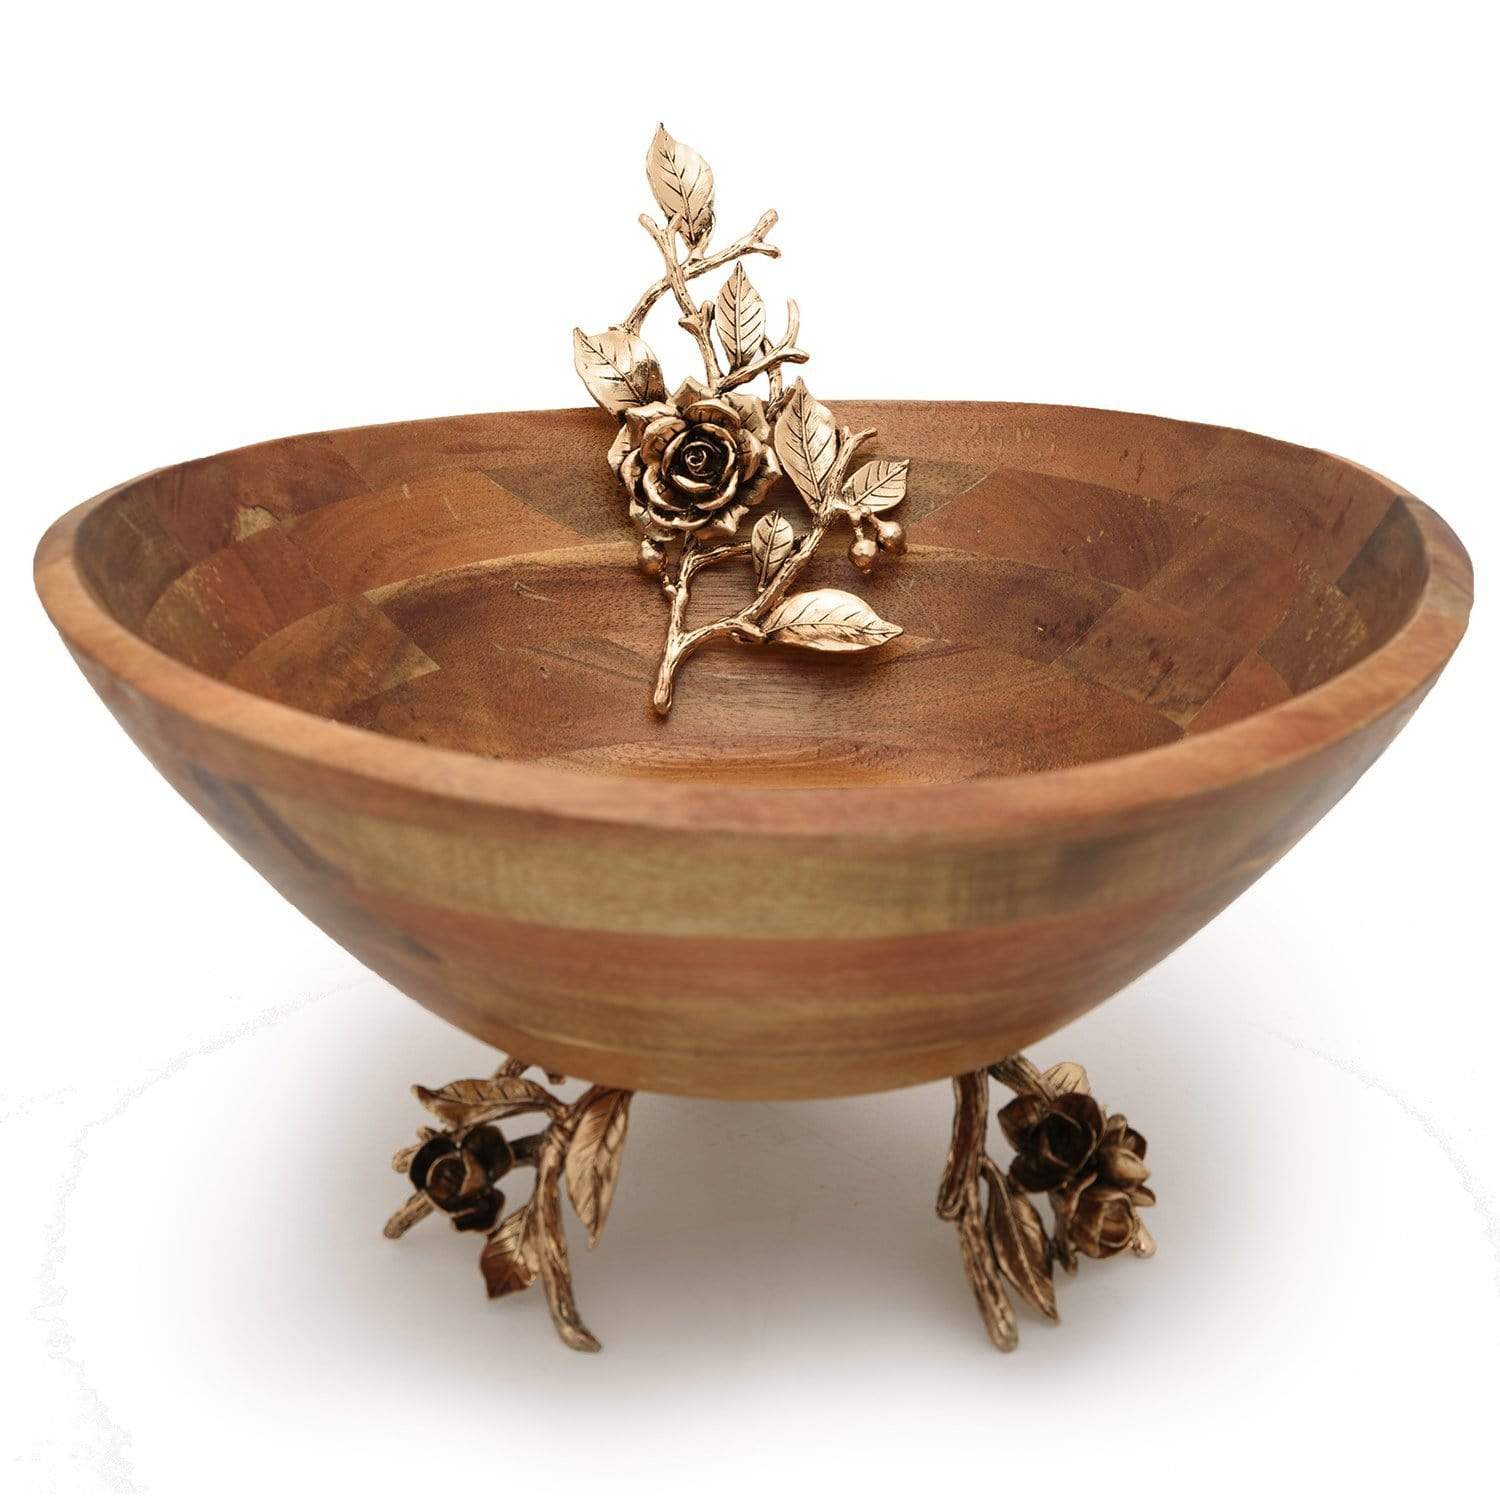 Otantik TW6001L 1 Piece Wood Bowl - Antique Gold, Large - TW6001L - Jashanmal Home